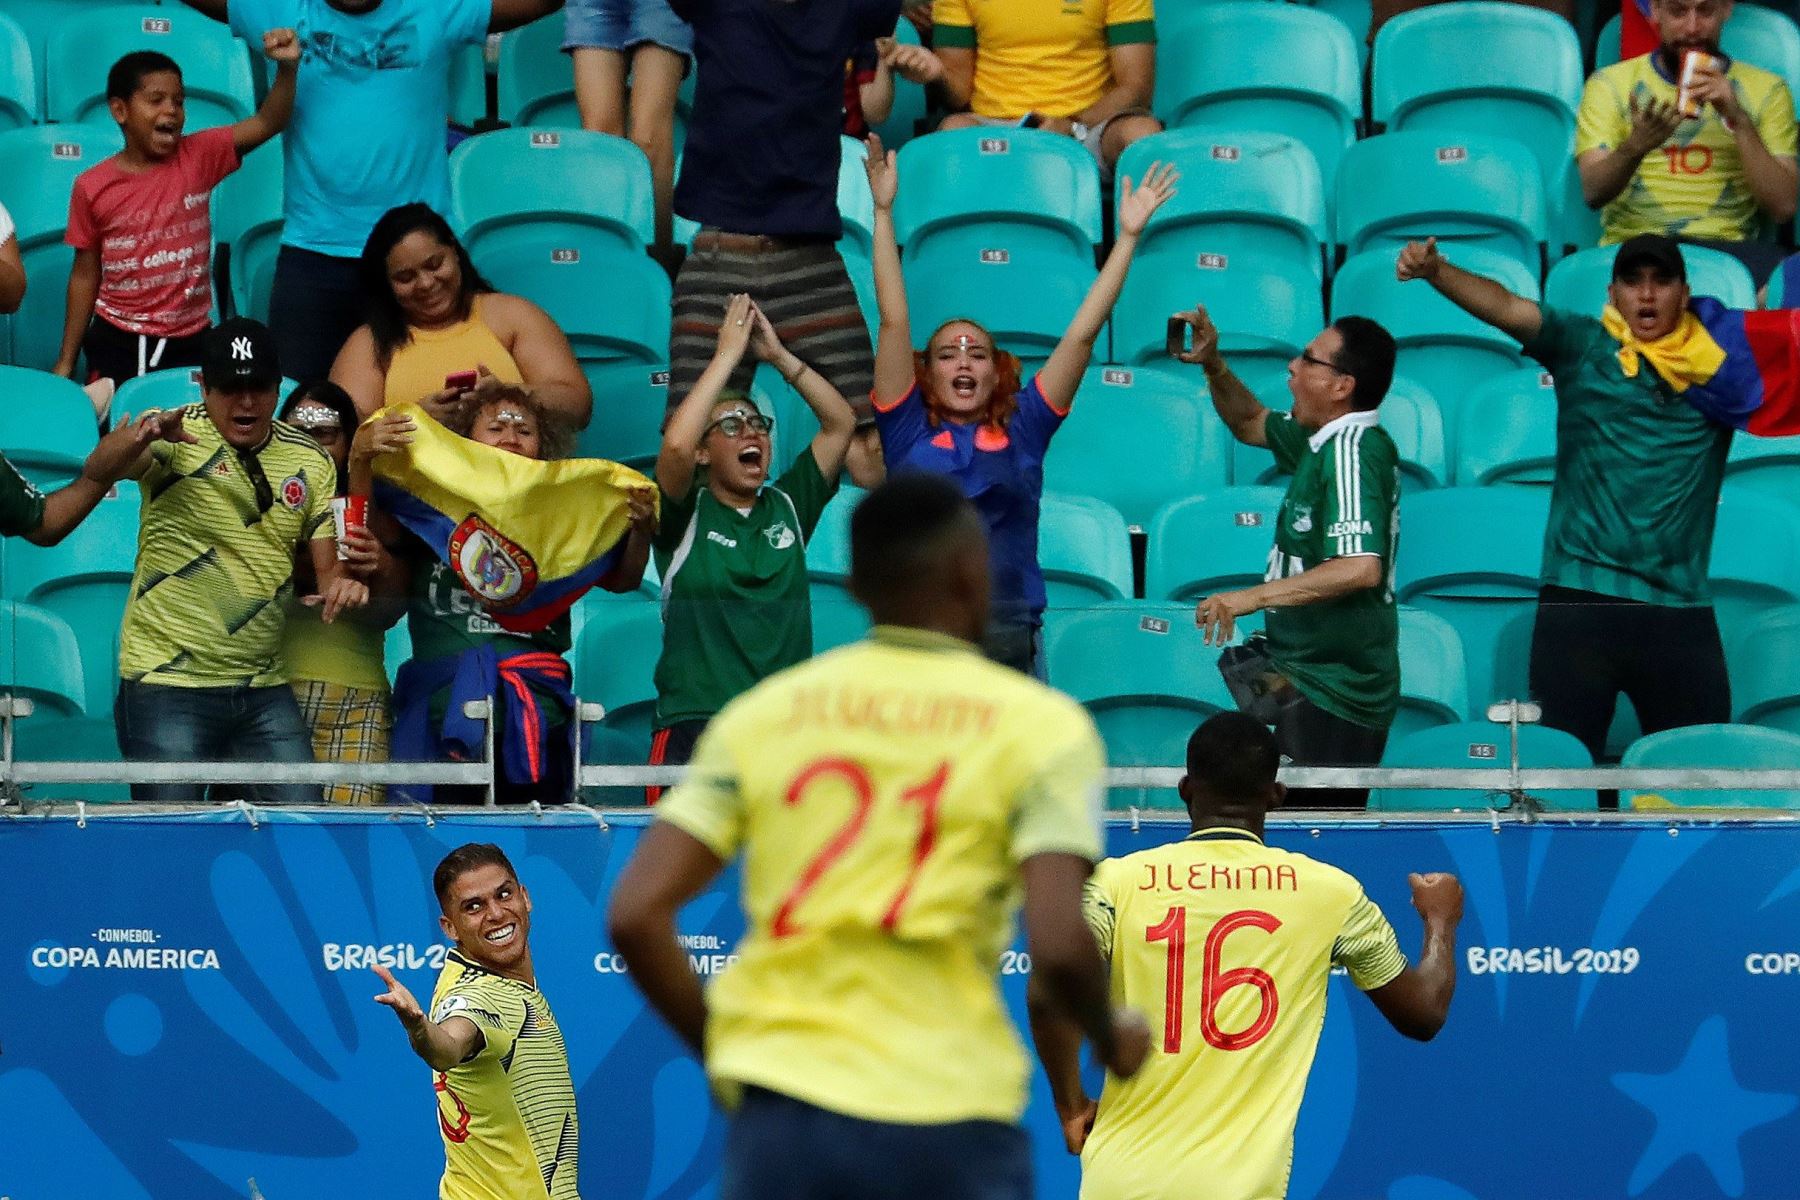 El jugador de Colombia celebra un gol Gustavo Cuellar (i), durante el partido Colombia-Paraguay del Grupo B de la Copa América de Fútbol 2019, en el Estadio Arena Fonte Nova de Salvador, Brasil.
Foto: EFE